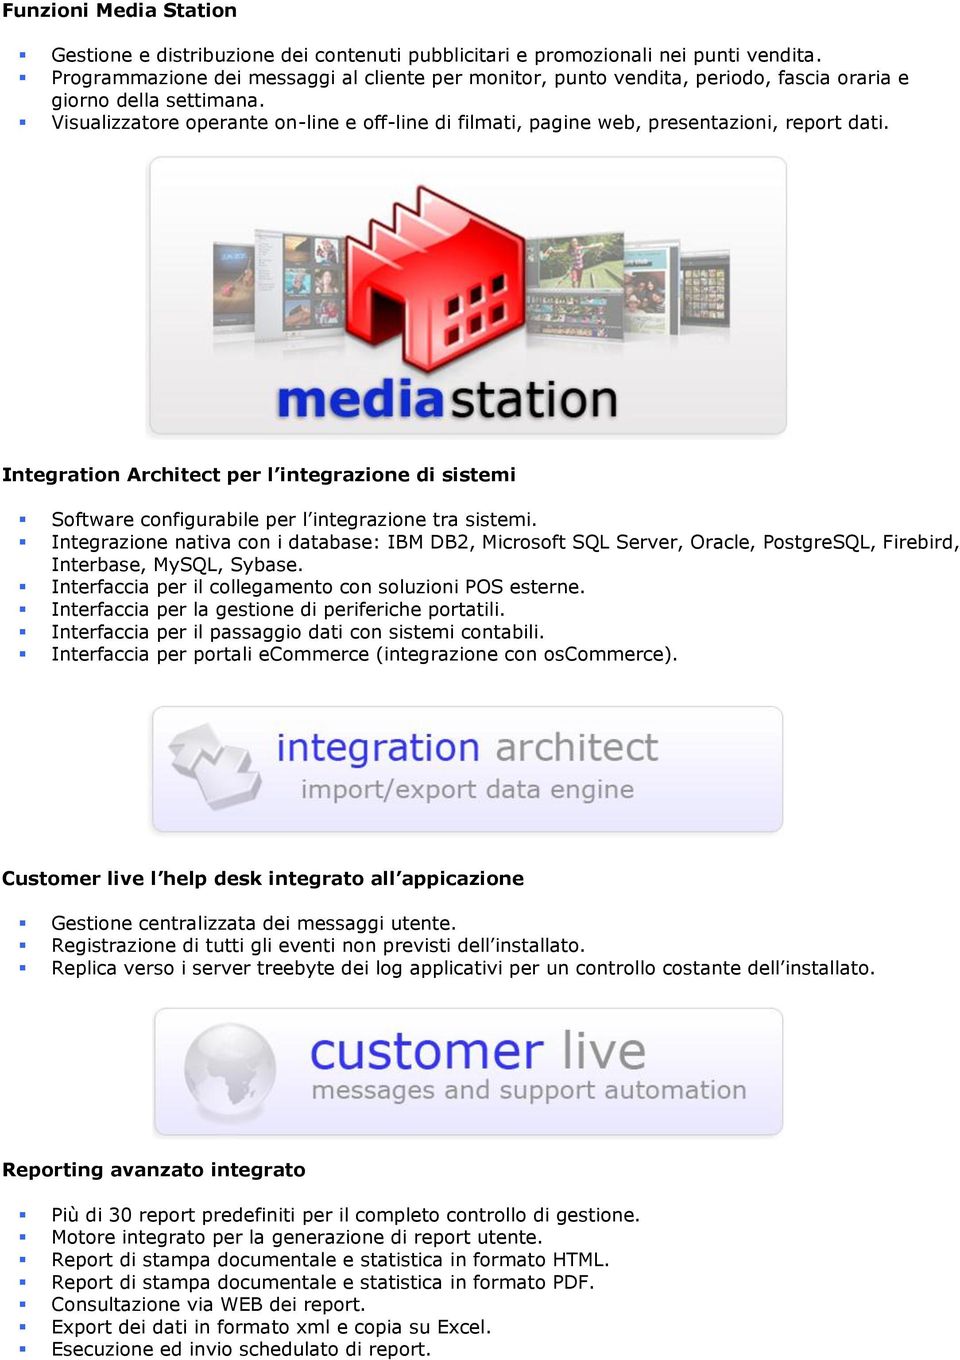 Visualizzatore operante on-line e off-line di filmati, pagine web, presentazioni, report dati.